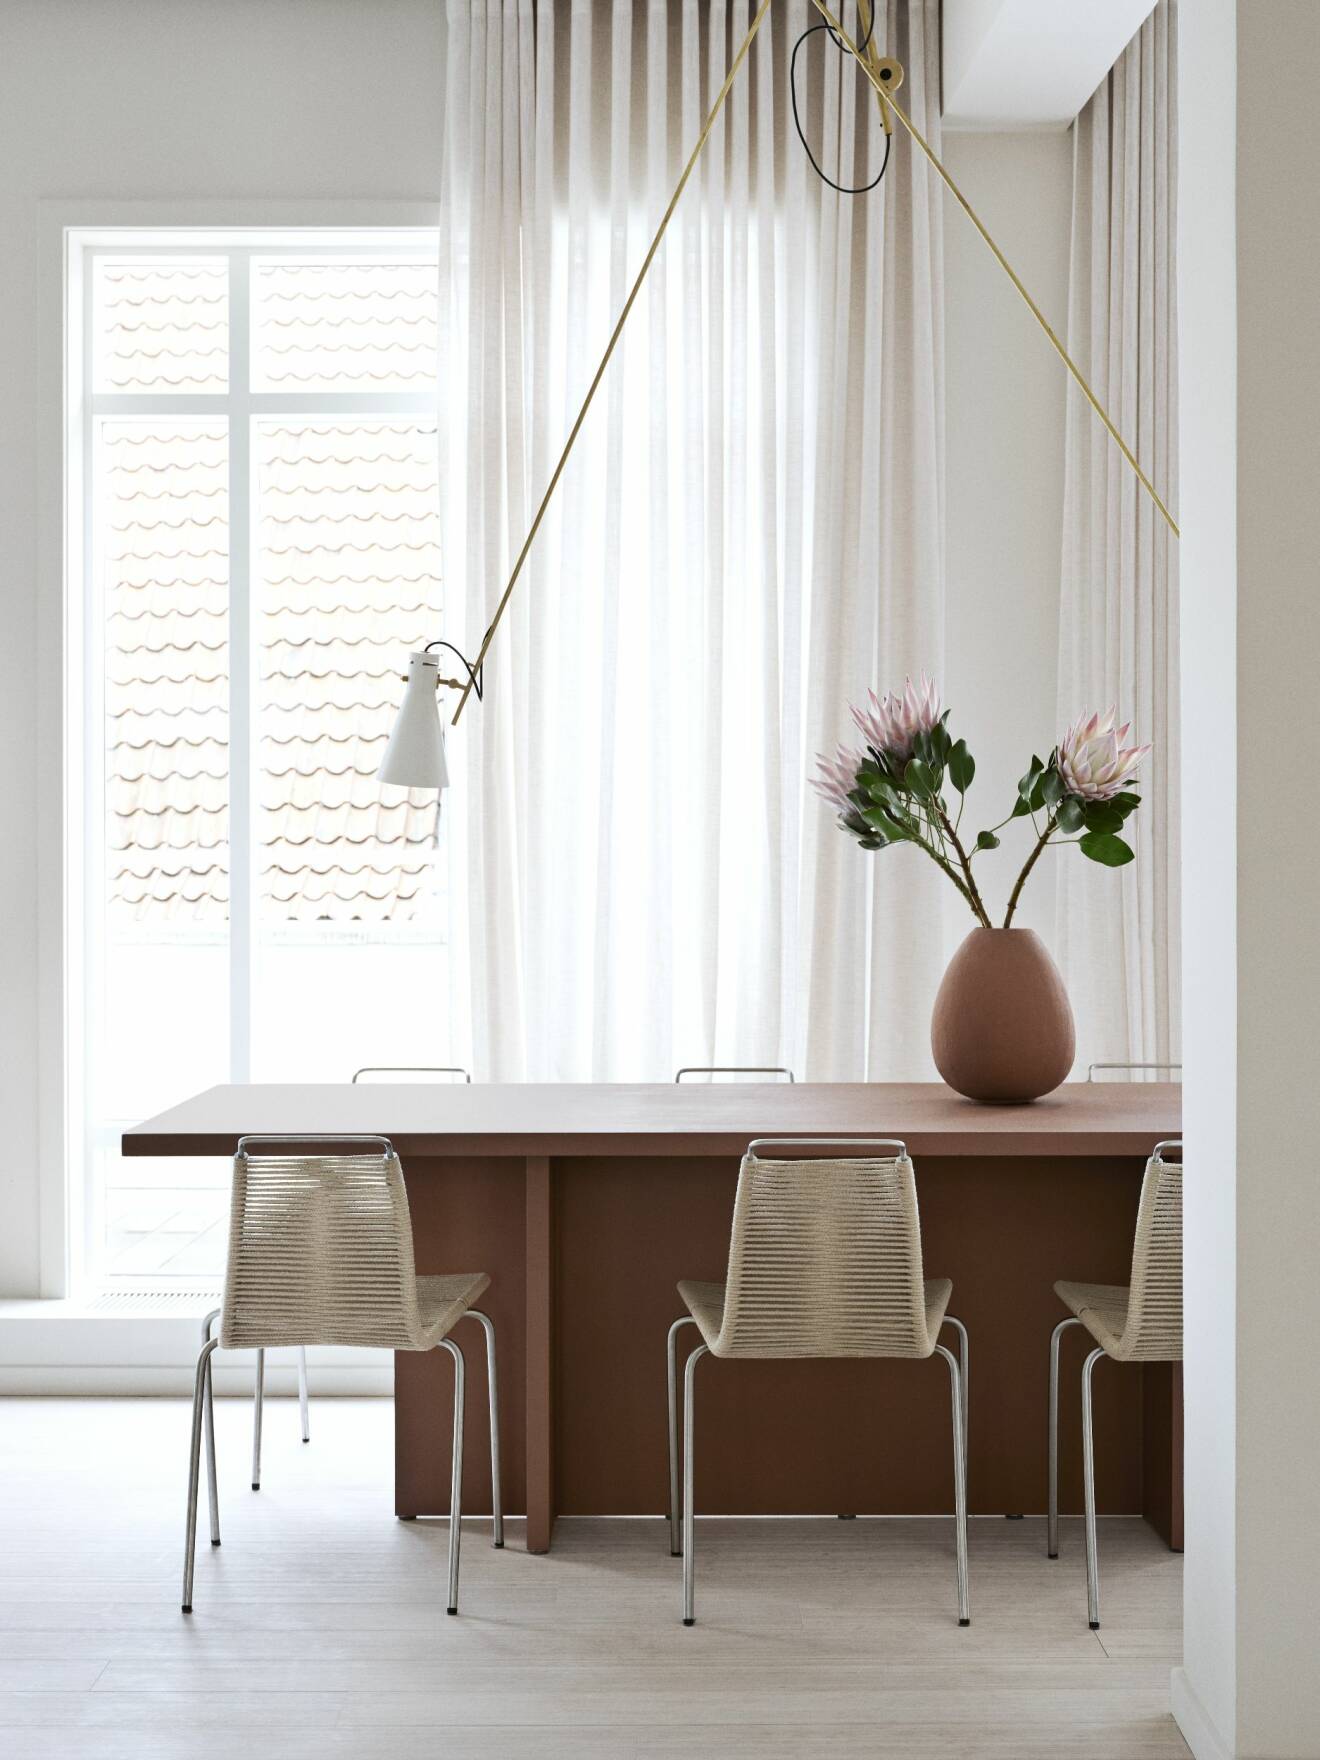 Hemma hos väskdesignern Yvonne Koné i Köpenhamn matbord lampa vas